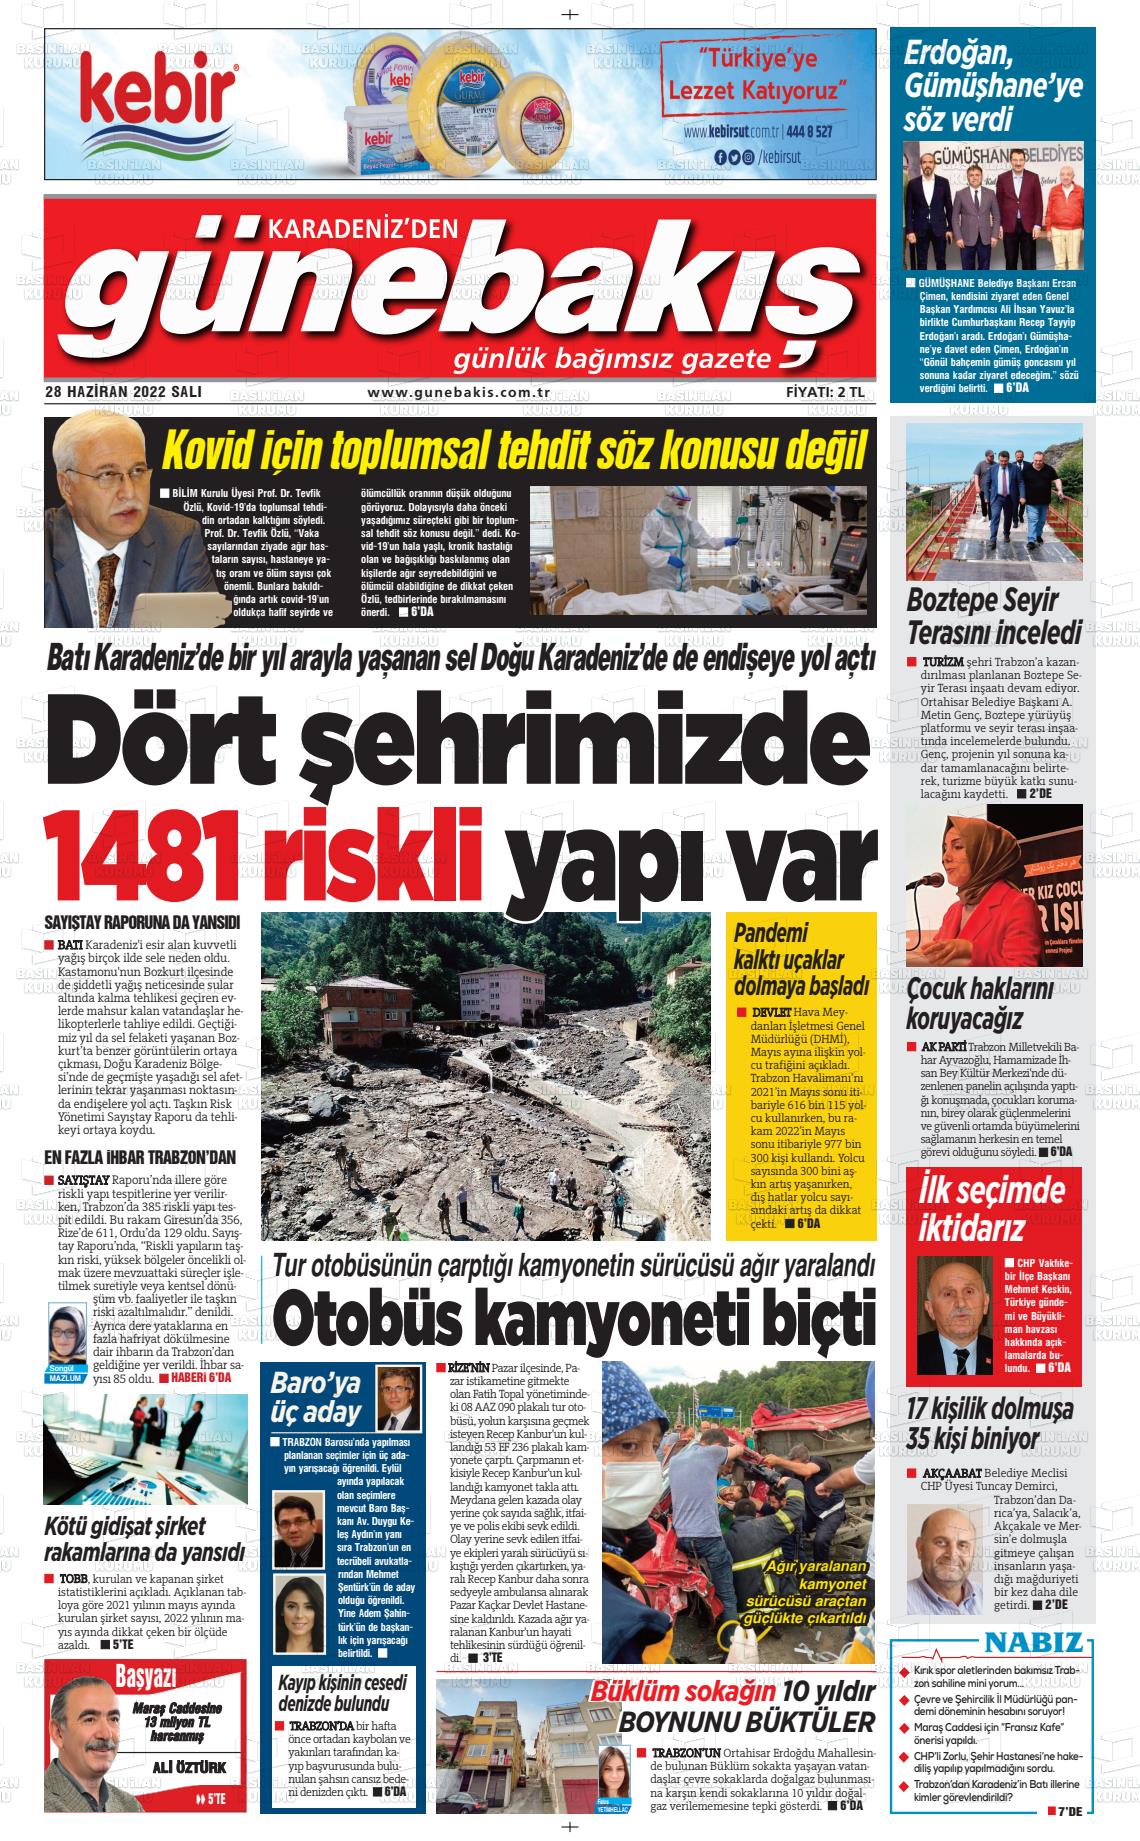 28 Haziran 2022 Günebakış Gazete Manşeti